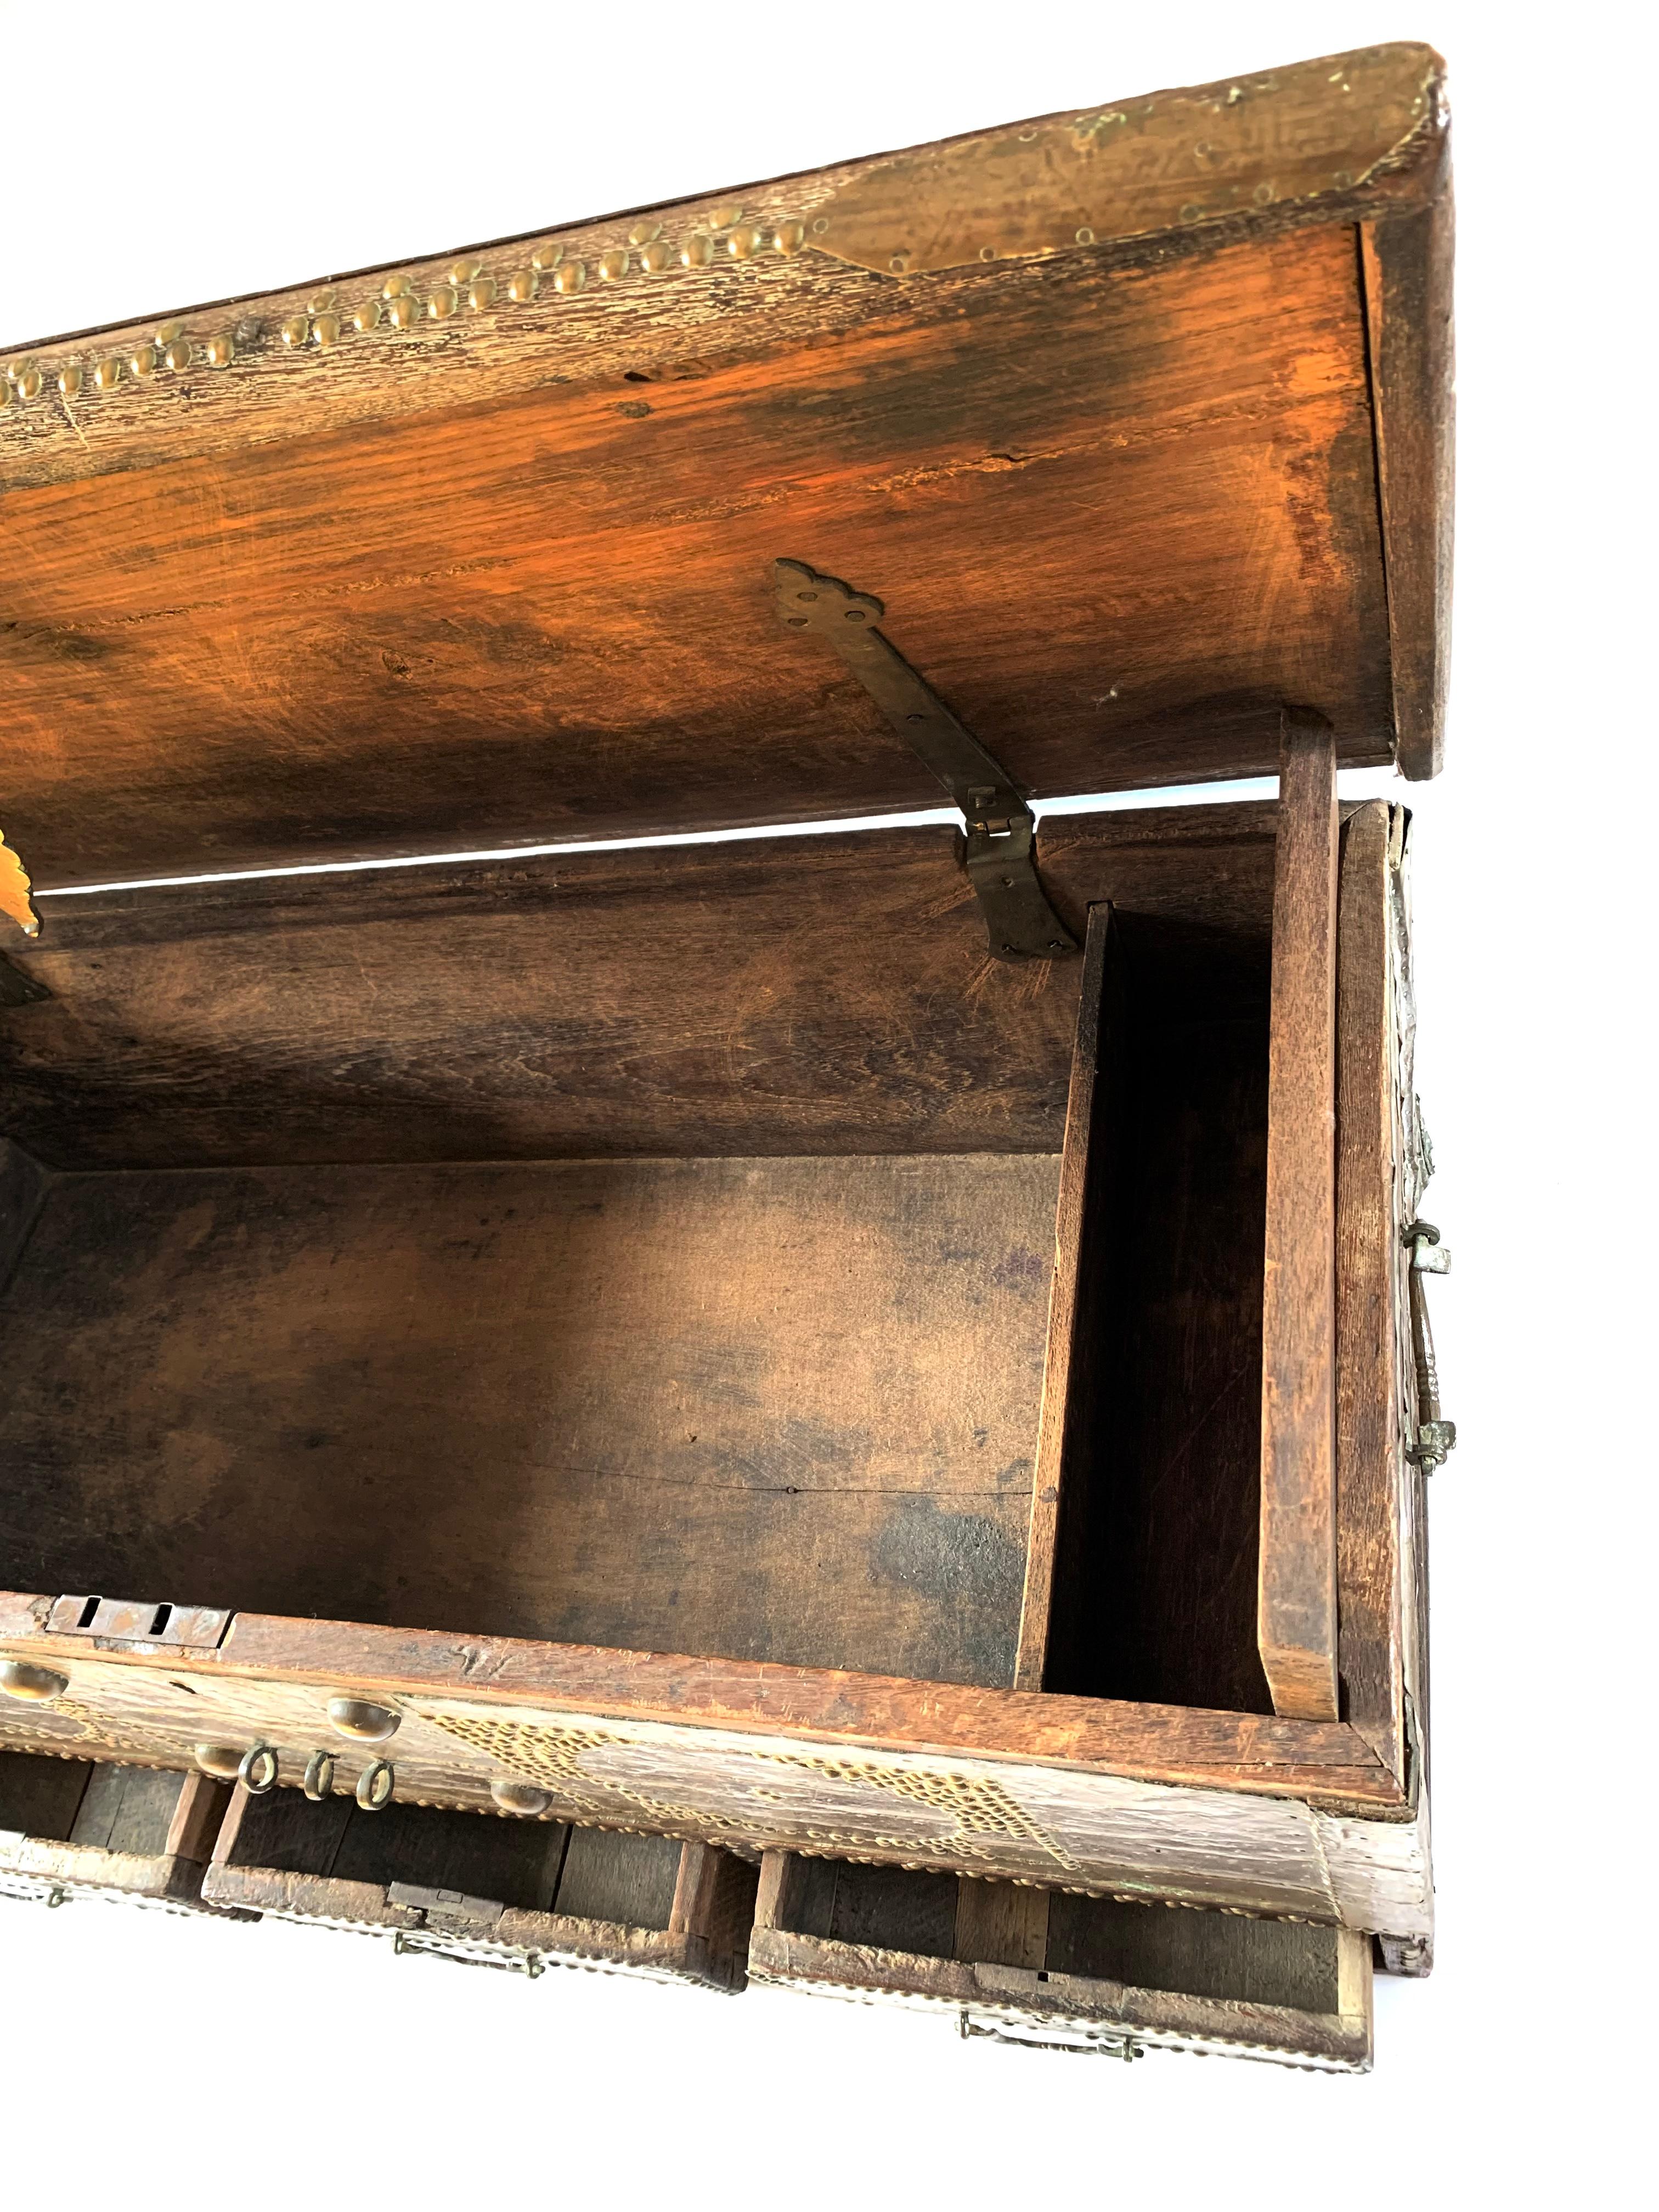 Eine seltene Sansibar-Truhe aus der Mitte des 19. Jahrhunderts, ausgestattet mit Bronzeblech und Messingnieten in einem atemberaubenden Design auf der Vorderseite, den Seiten und der Oberseite. Mitgifttruhen haben eine gut dokumentierte Geschichte